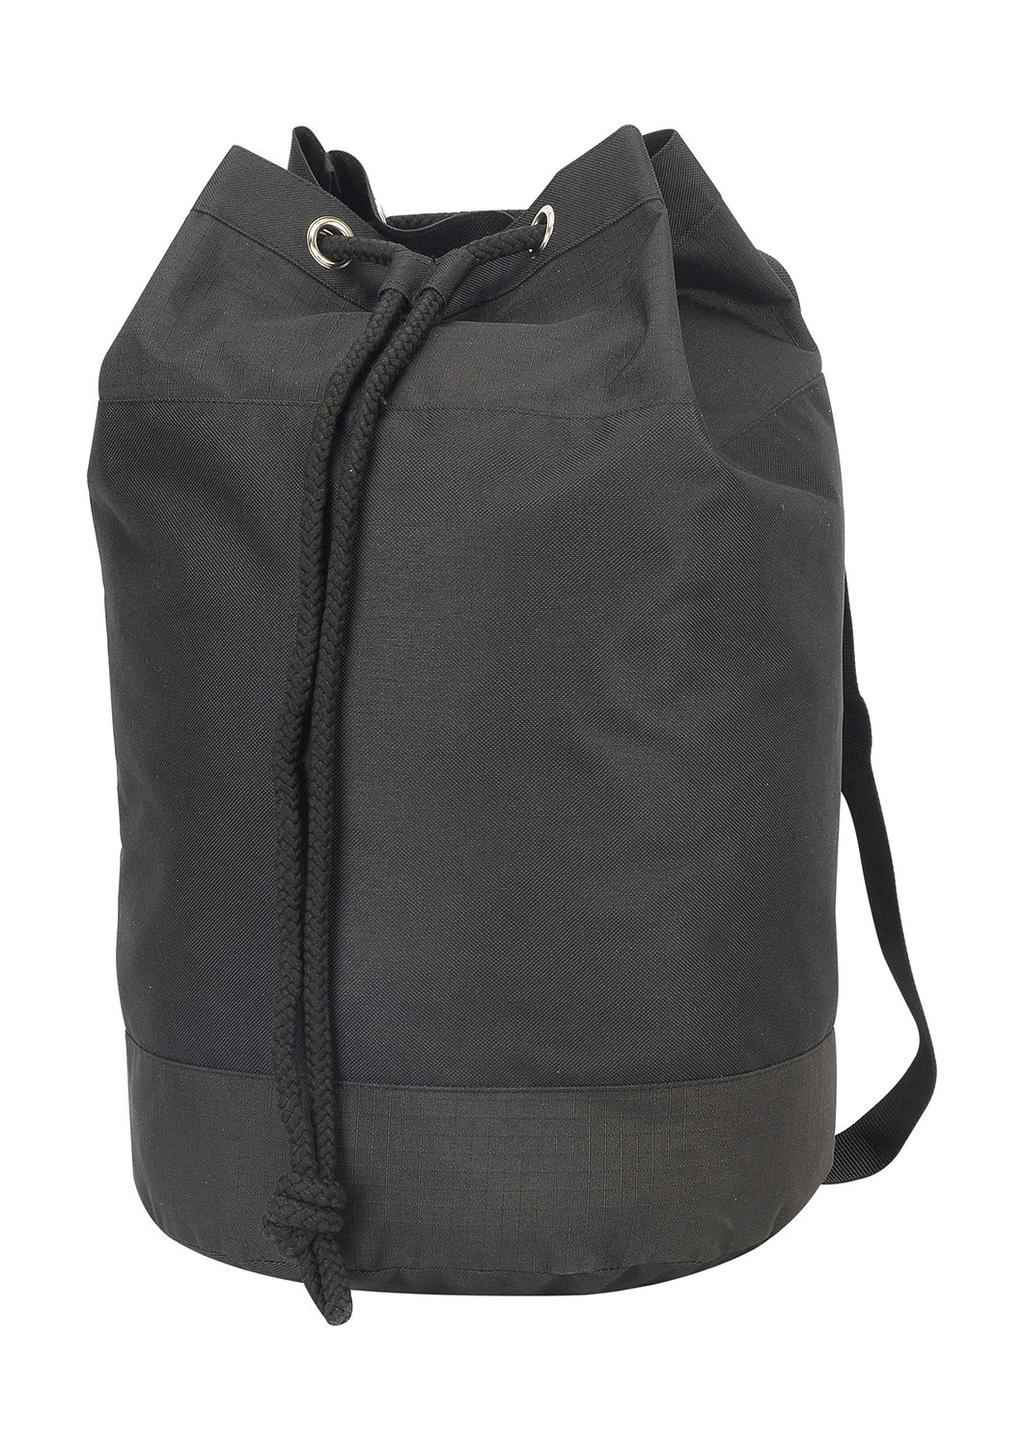 Plumpton Polyester Duffle Bag zum Besticken und Bedrucken in der Farbe Black mit Ihren Logo, Schriftzug oder Motiv.